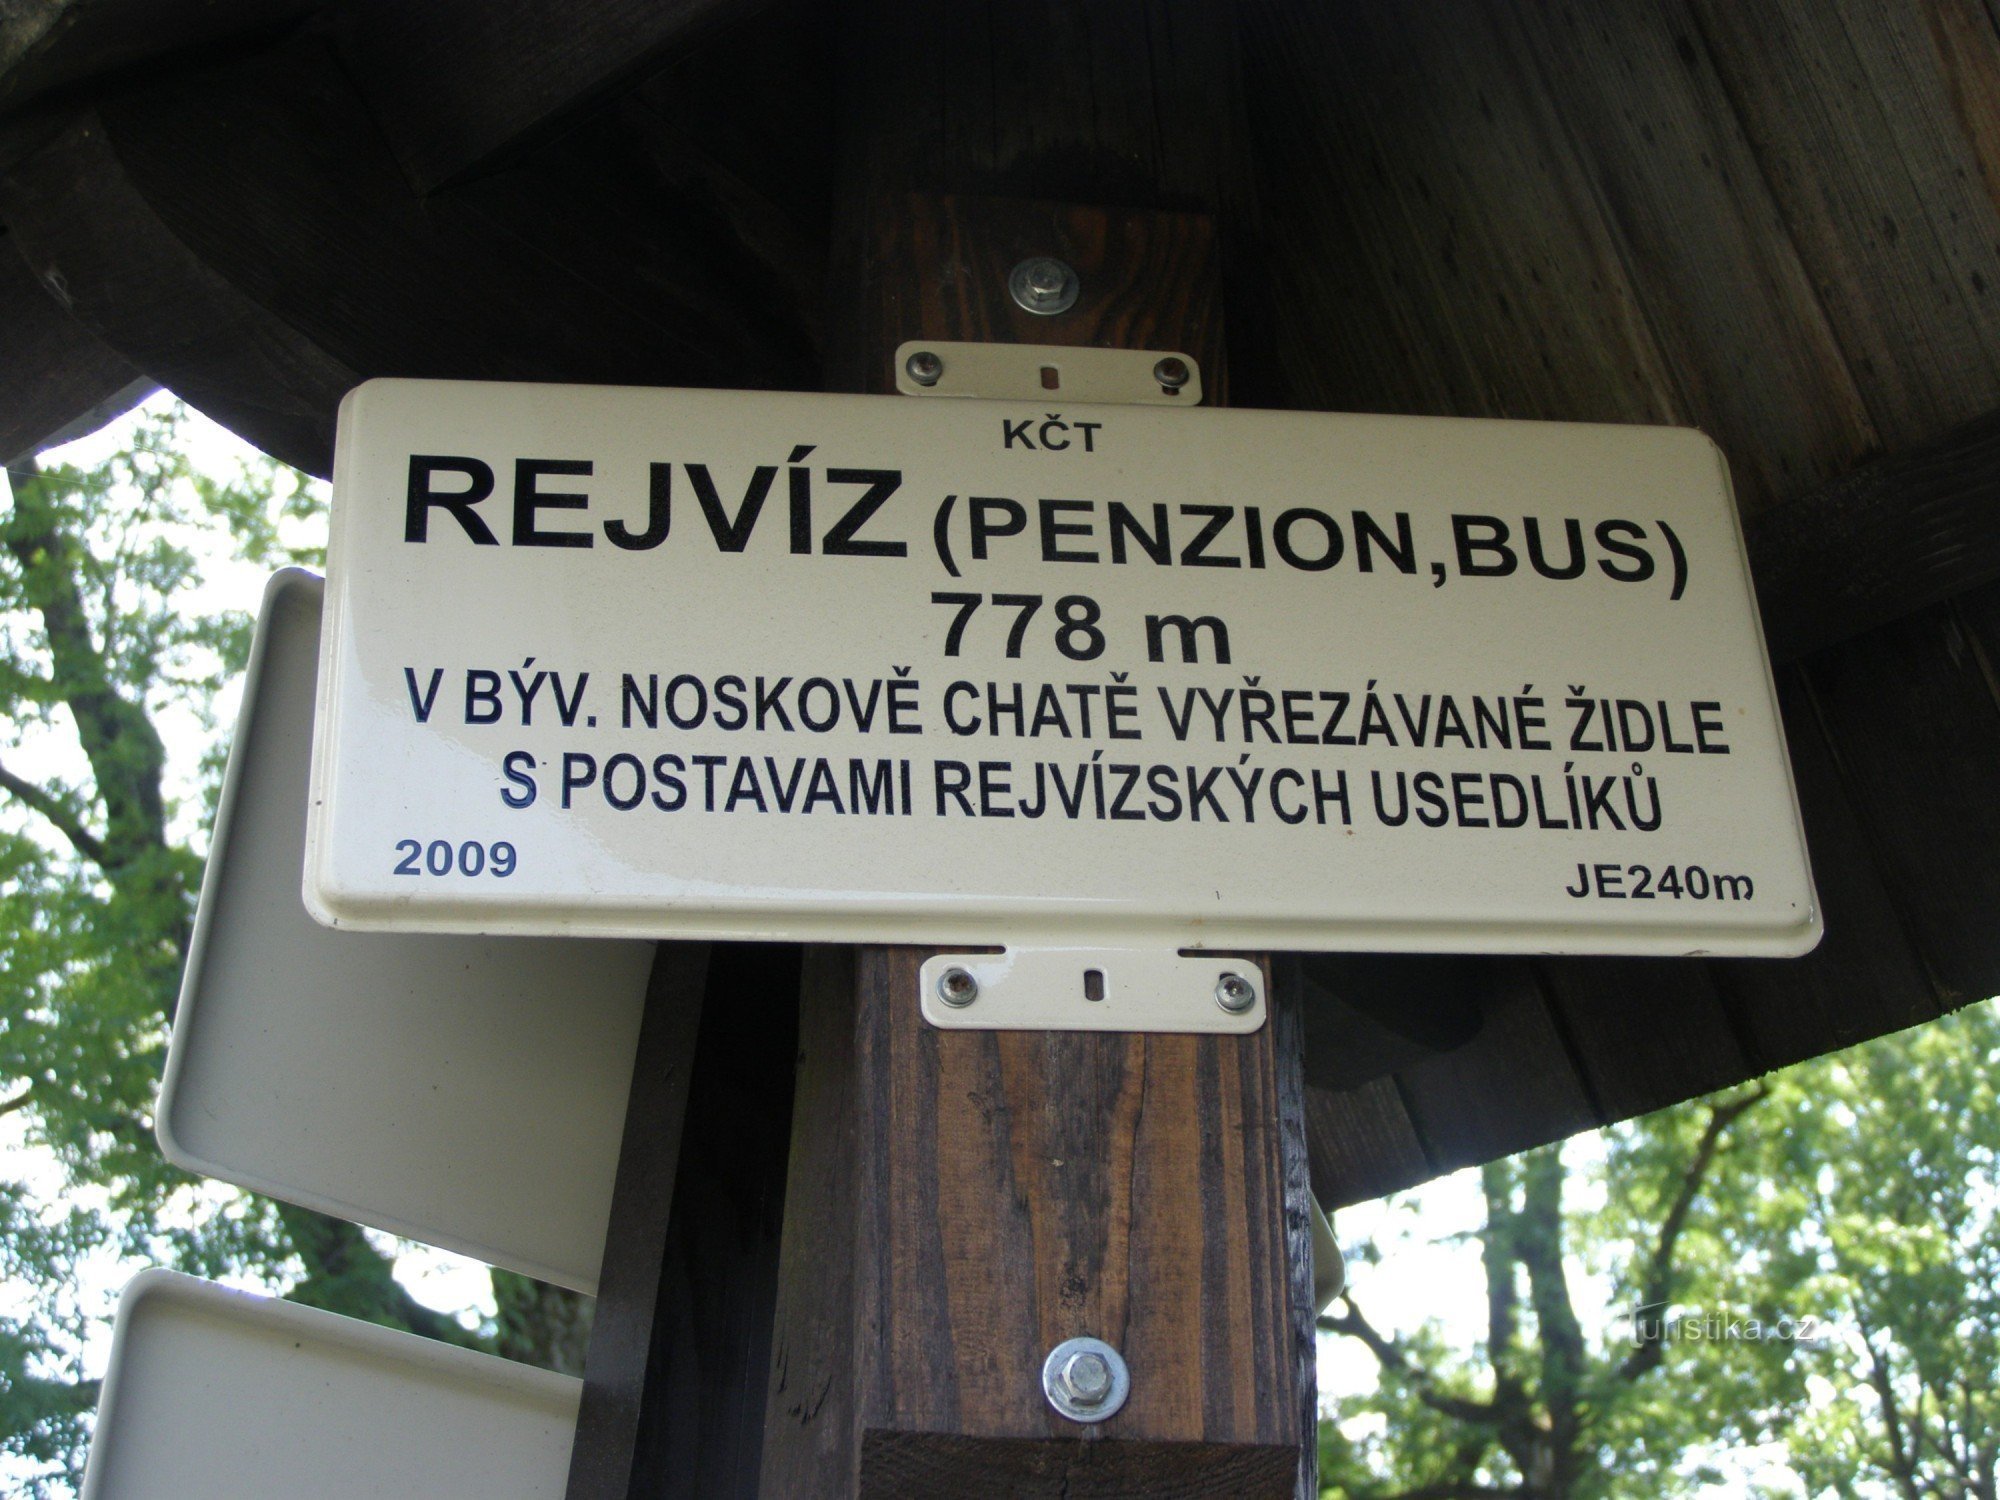 turistkorsning - Rejvíz, buss, Pension Rejvíz